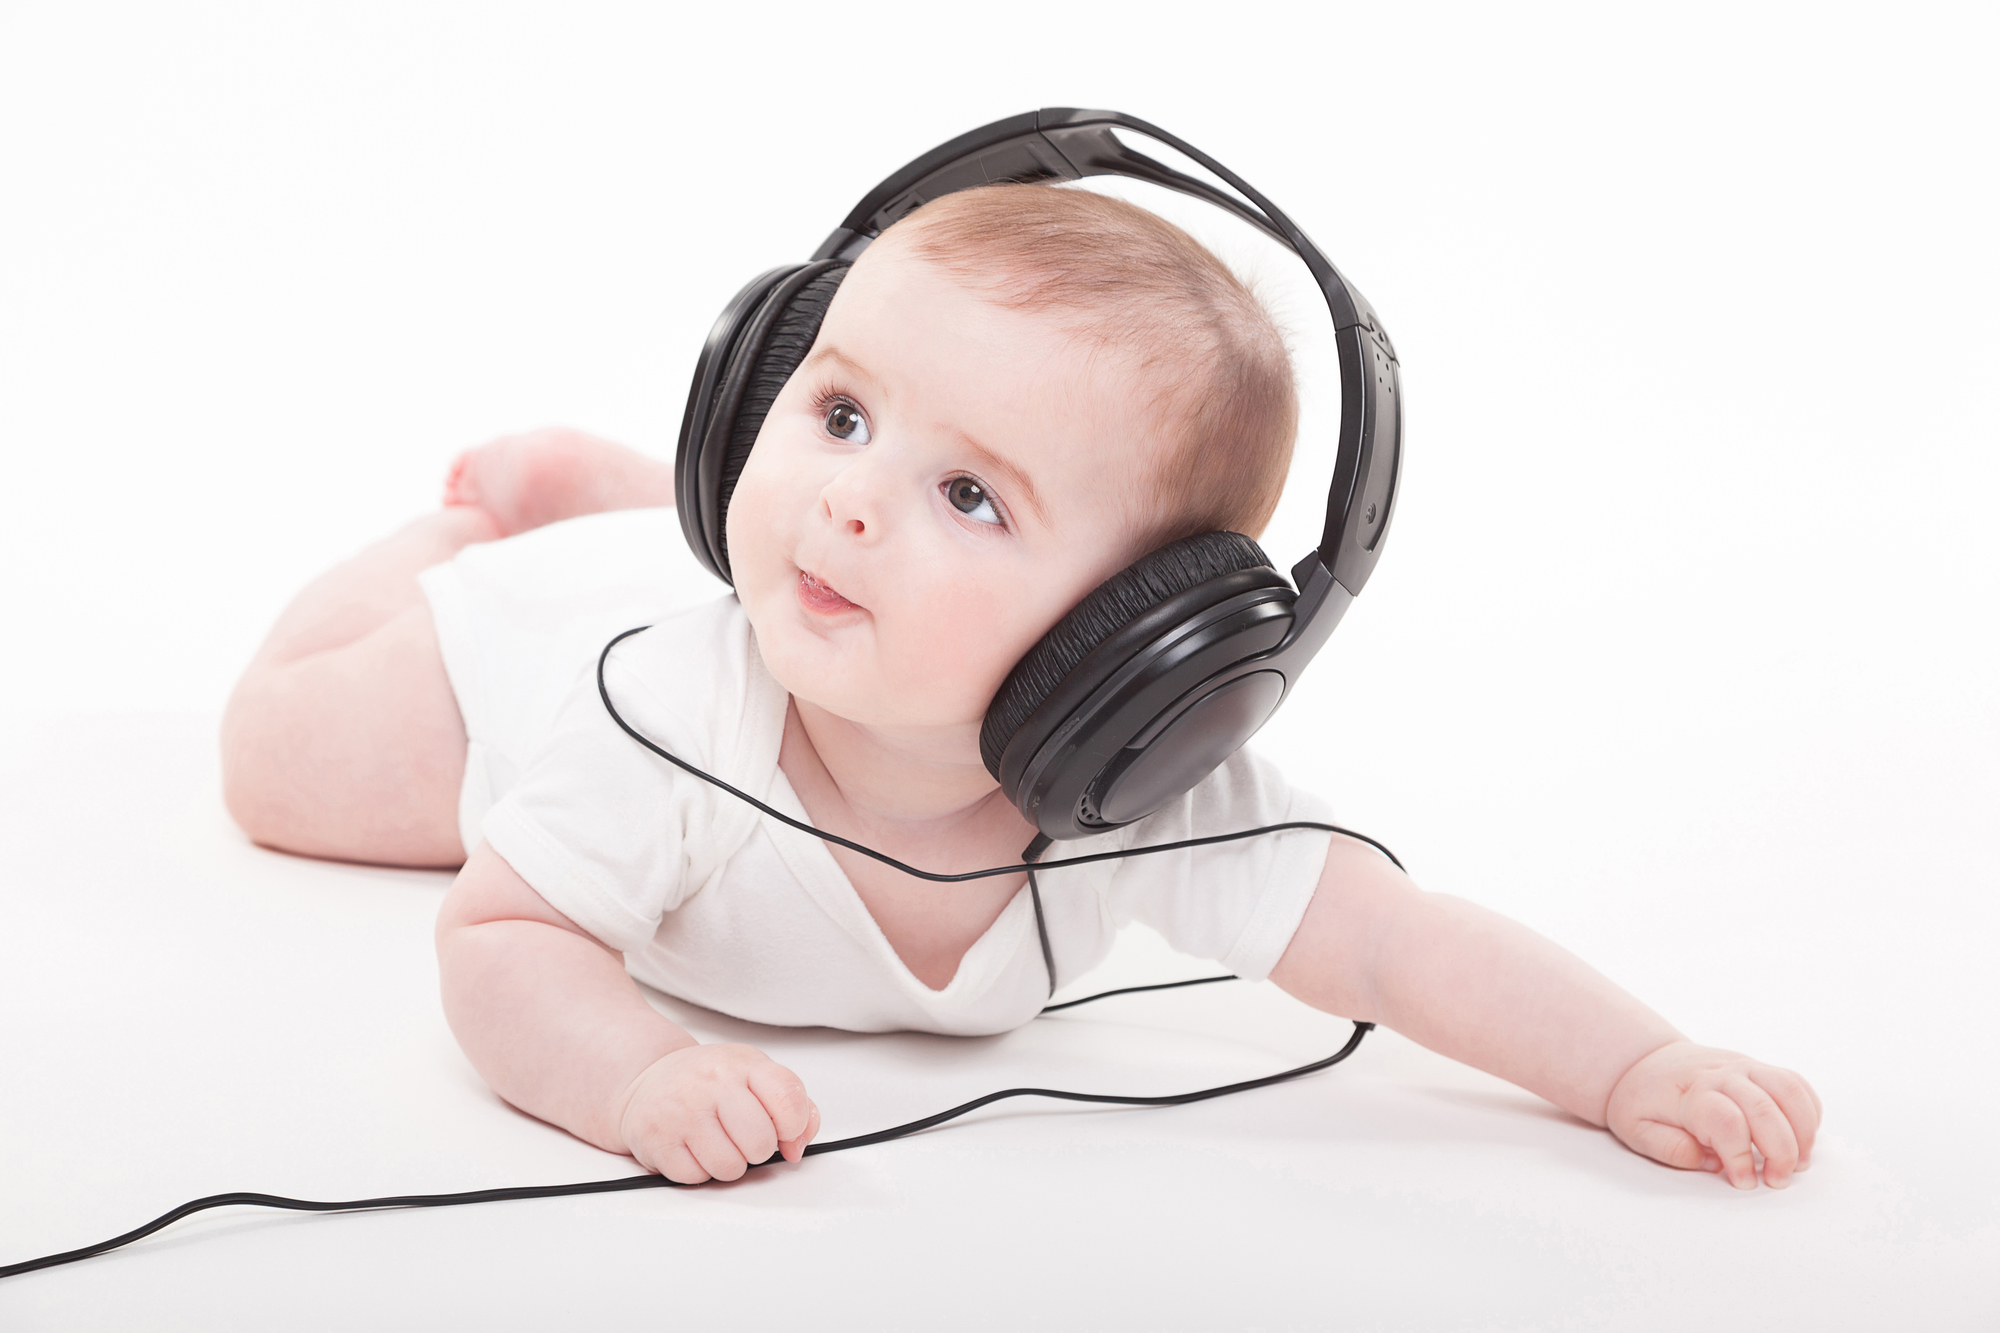 胎教や子育てを応援 赤ちゃんと過ごす家族のための音楽 有線放送 家庭用 Usen音楽放送 Usen Home